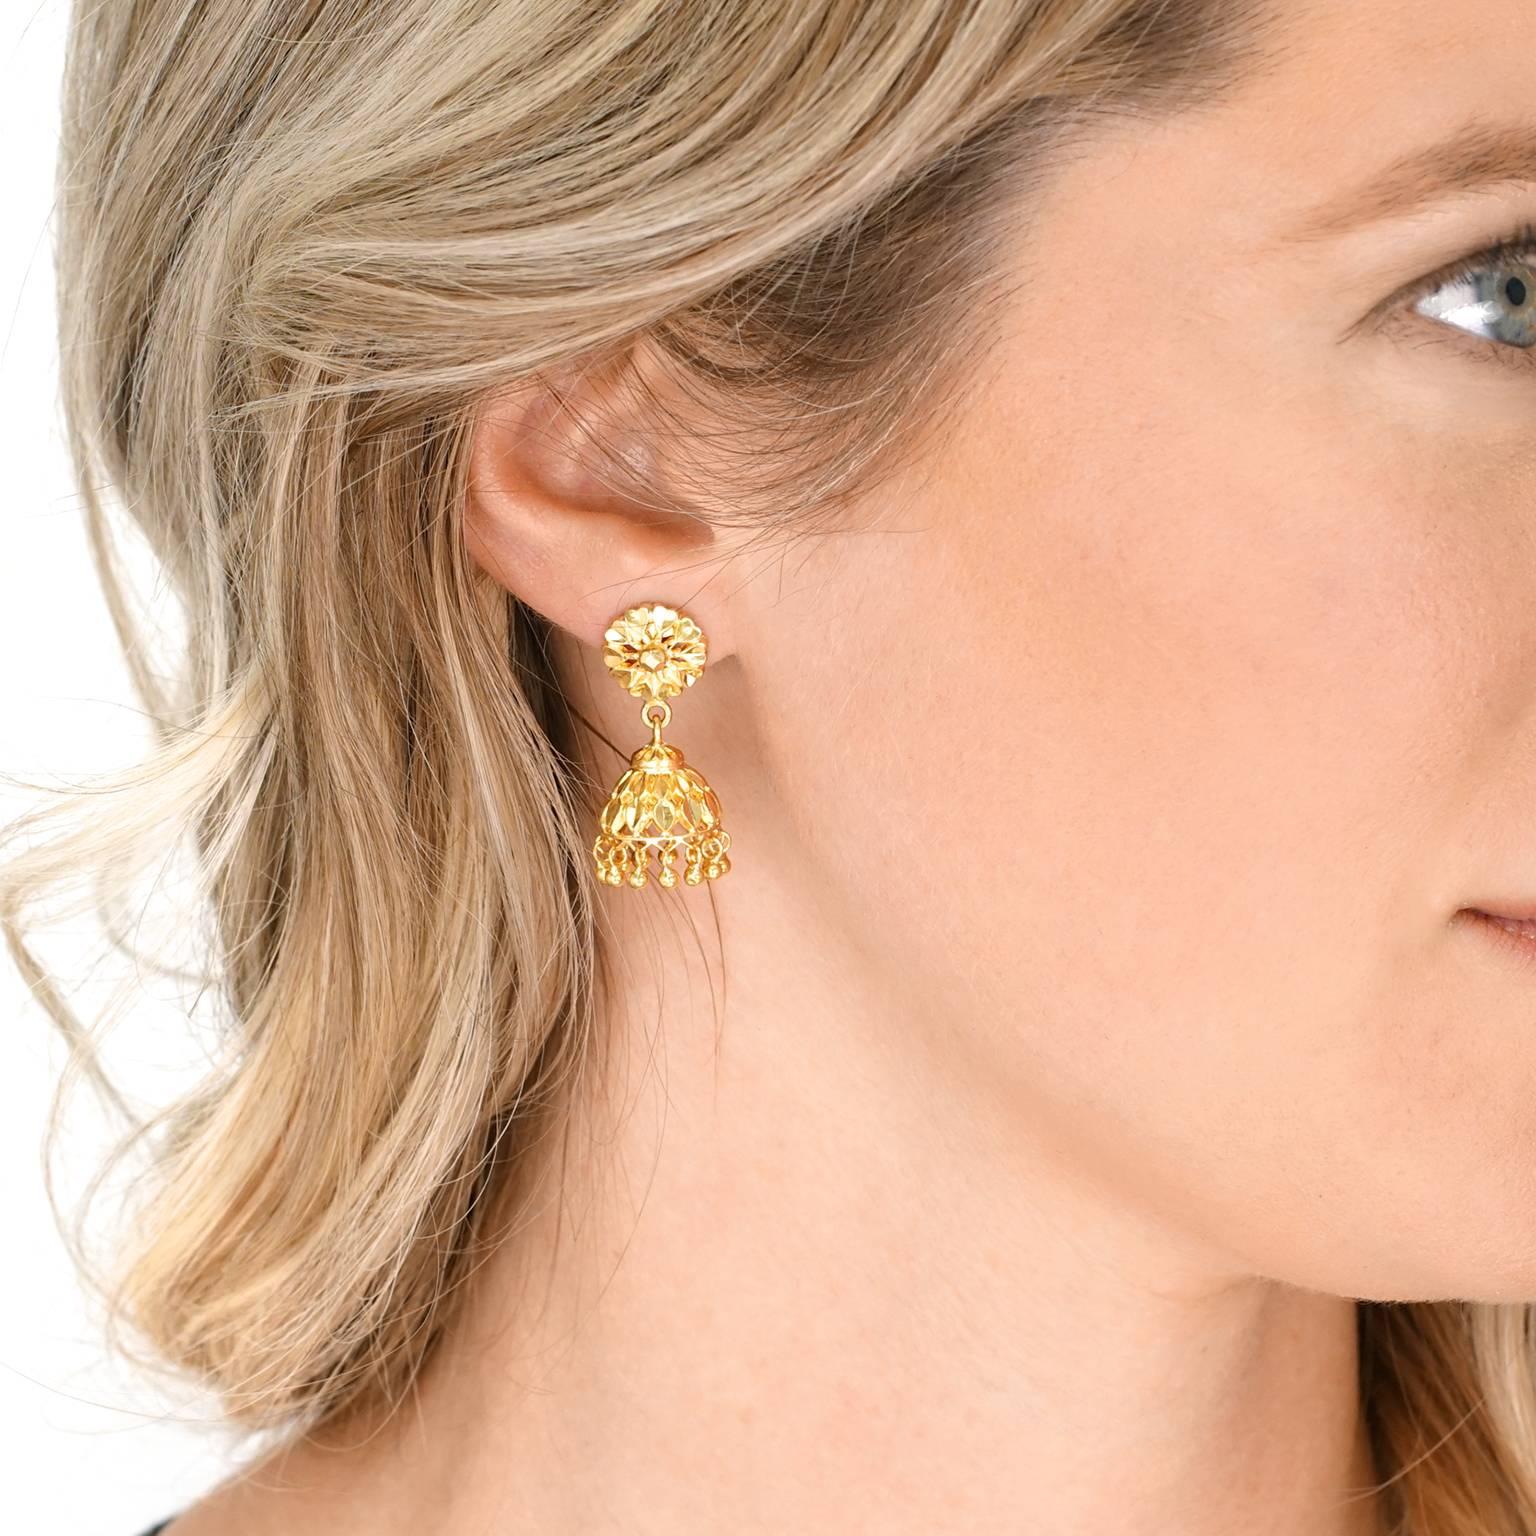 22 karat gold earrings